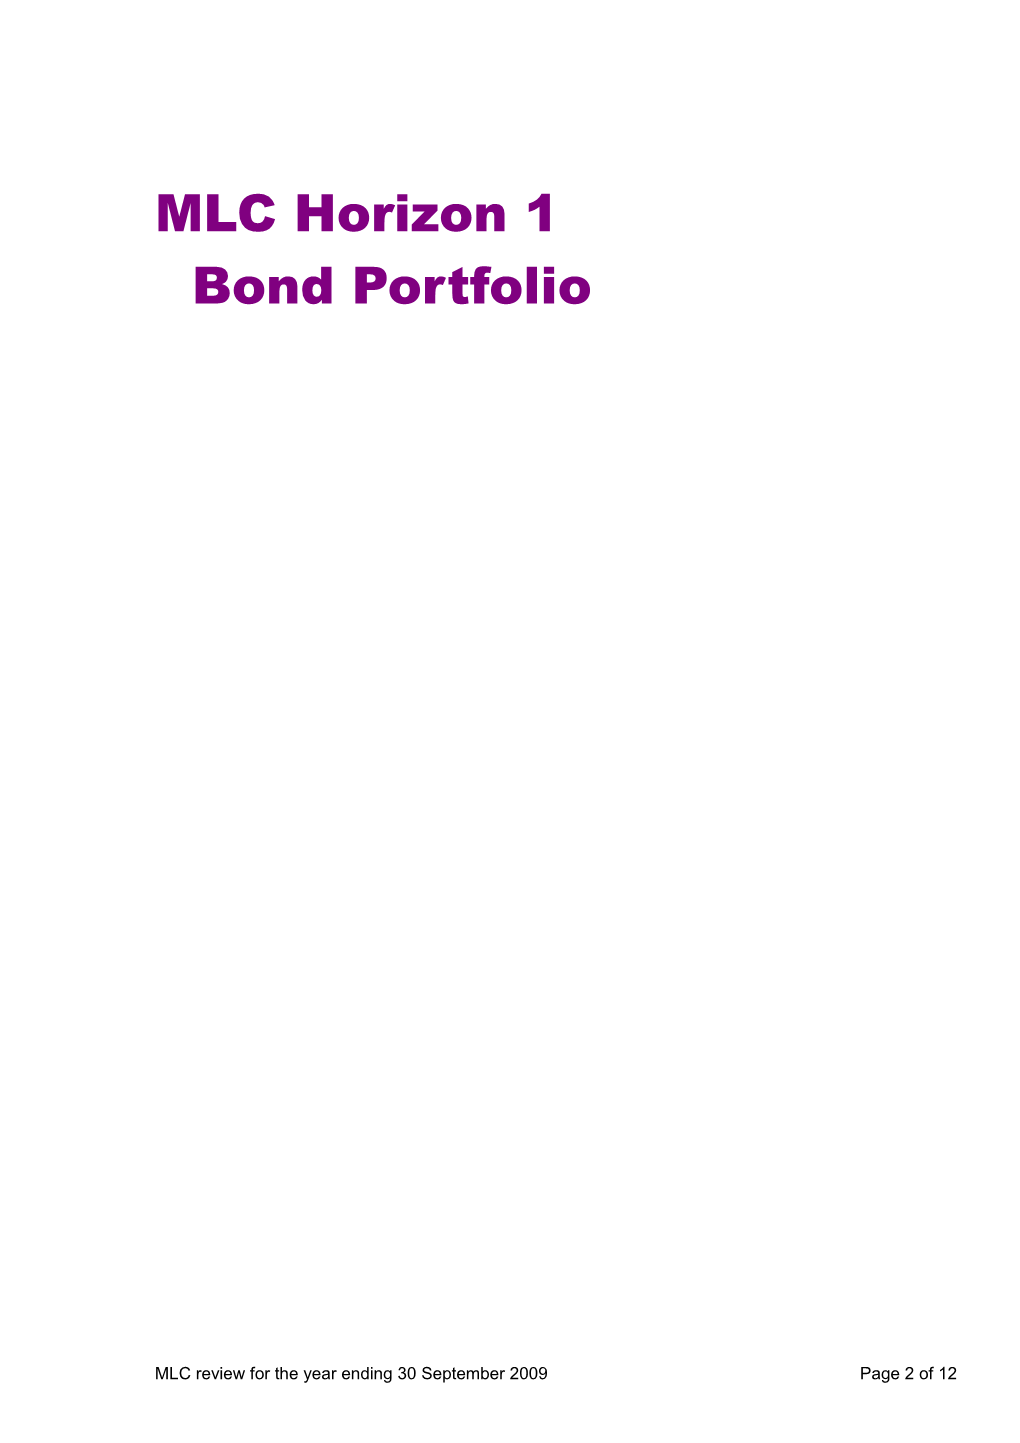 MLC Horizon 1 Bond Portfolio